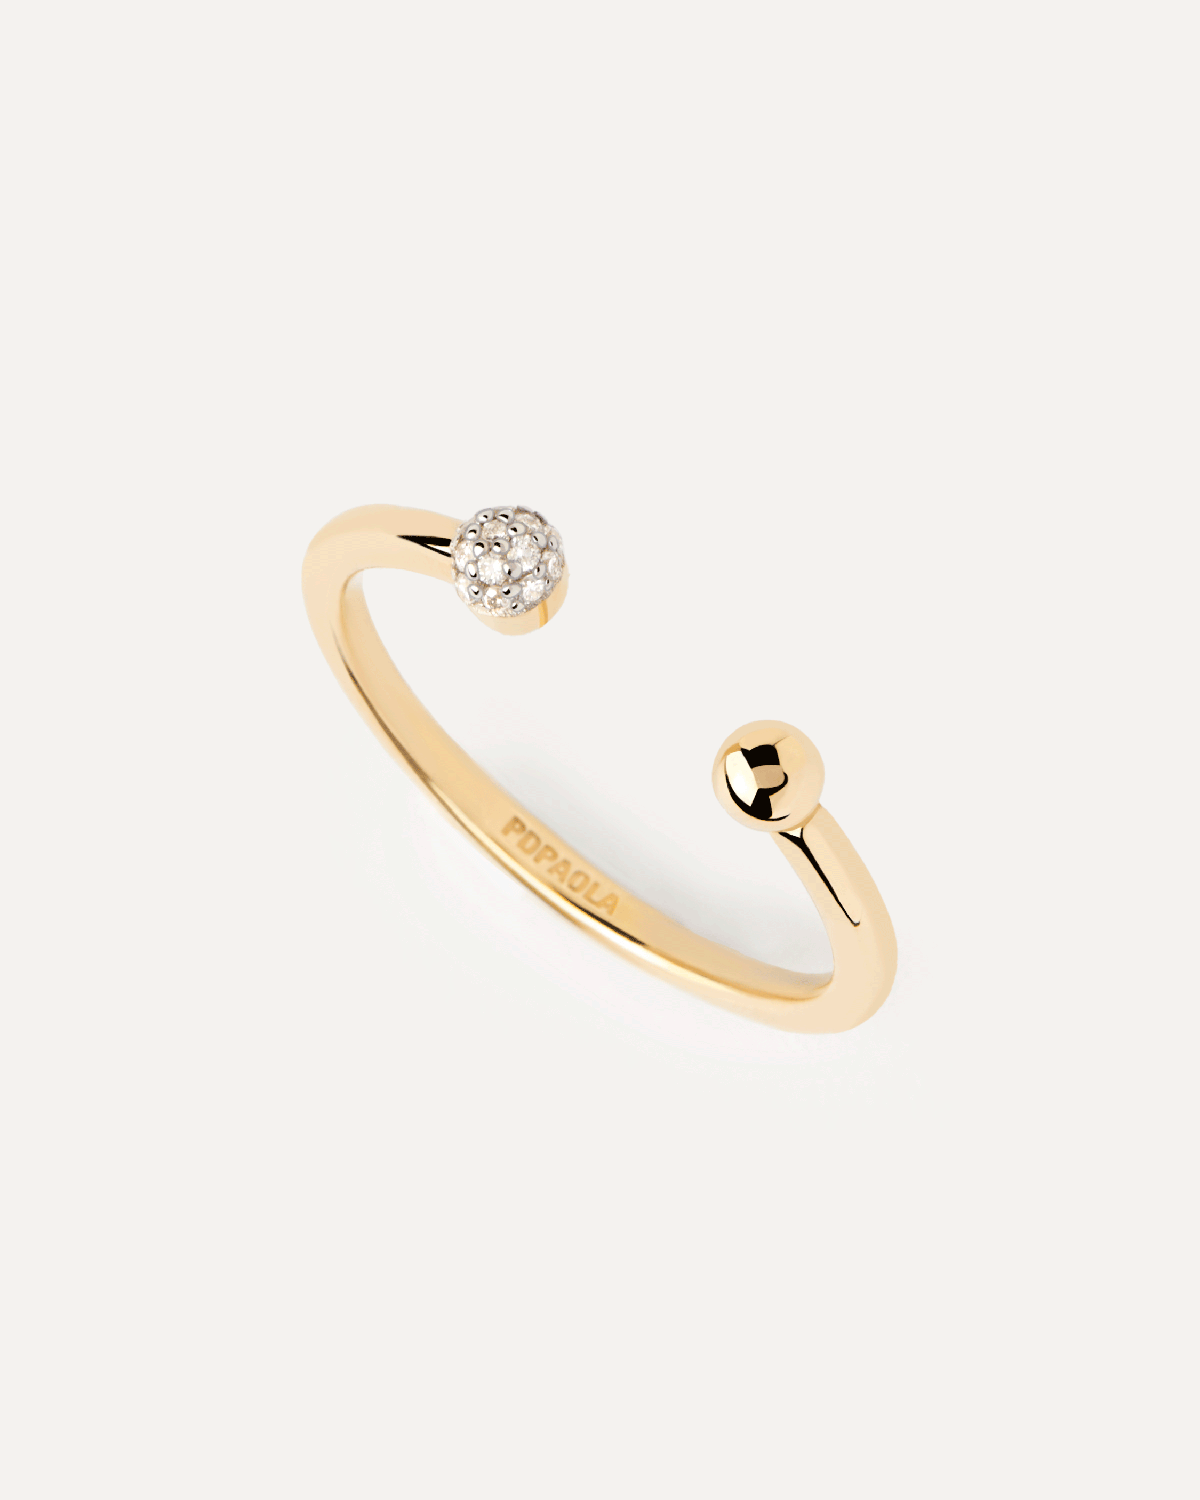 Clara ring aus gold mit diamanten. Offener You-and-Me-Ring aus massivem Gelbgold besetzt mit Laborgezüchtete Pavé-Diamanten. Erhalten Sie die neuesten Produkte von PDPAOLA. Geben Sie Ihre Bestellung sicher auf und erhalten Sie diesen Bestseller.